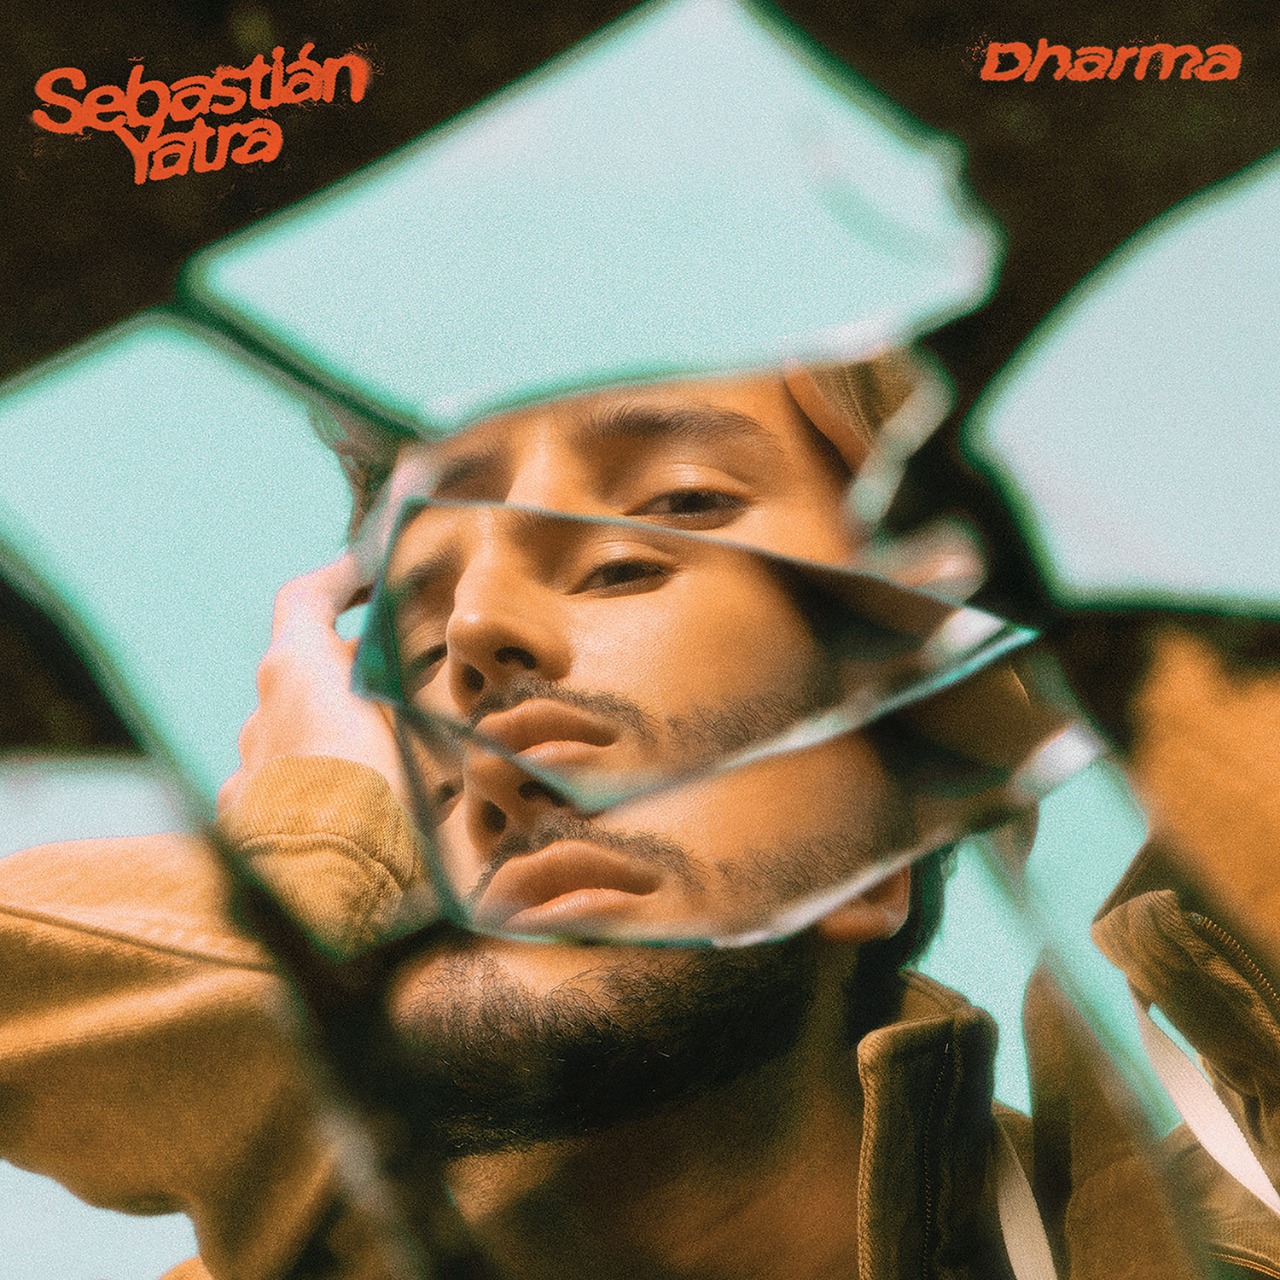 El artista multi-platino Sebastián Yatra estrena su nuevo álbum ‘Dharma’